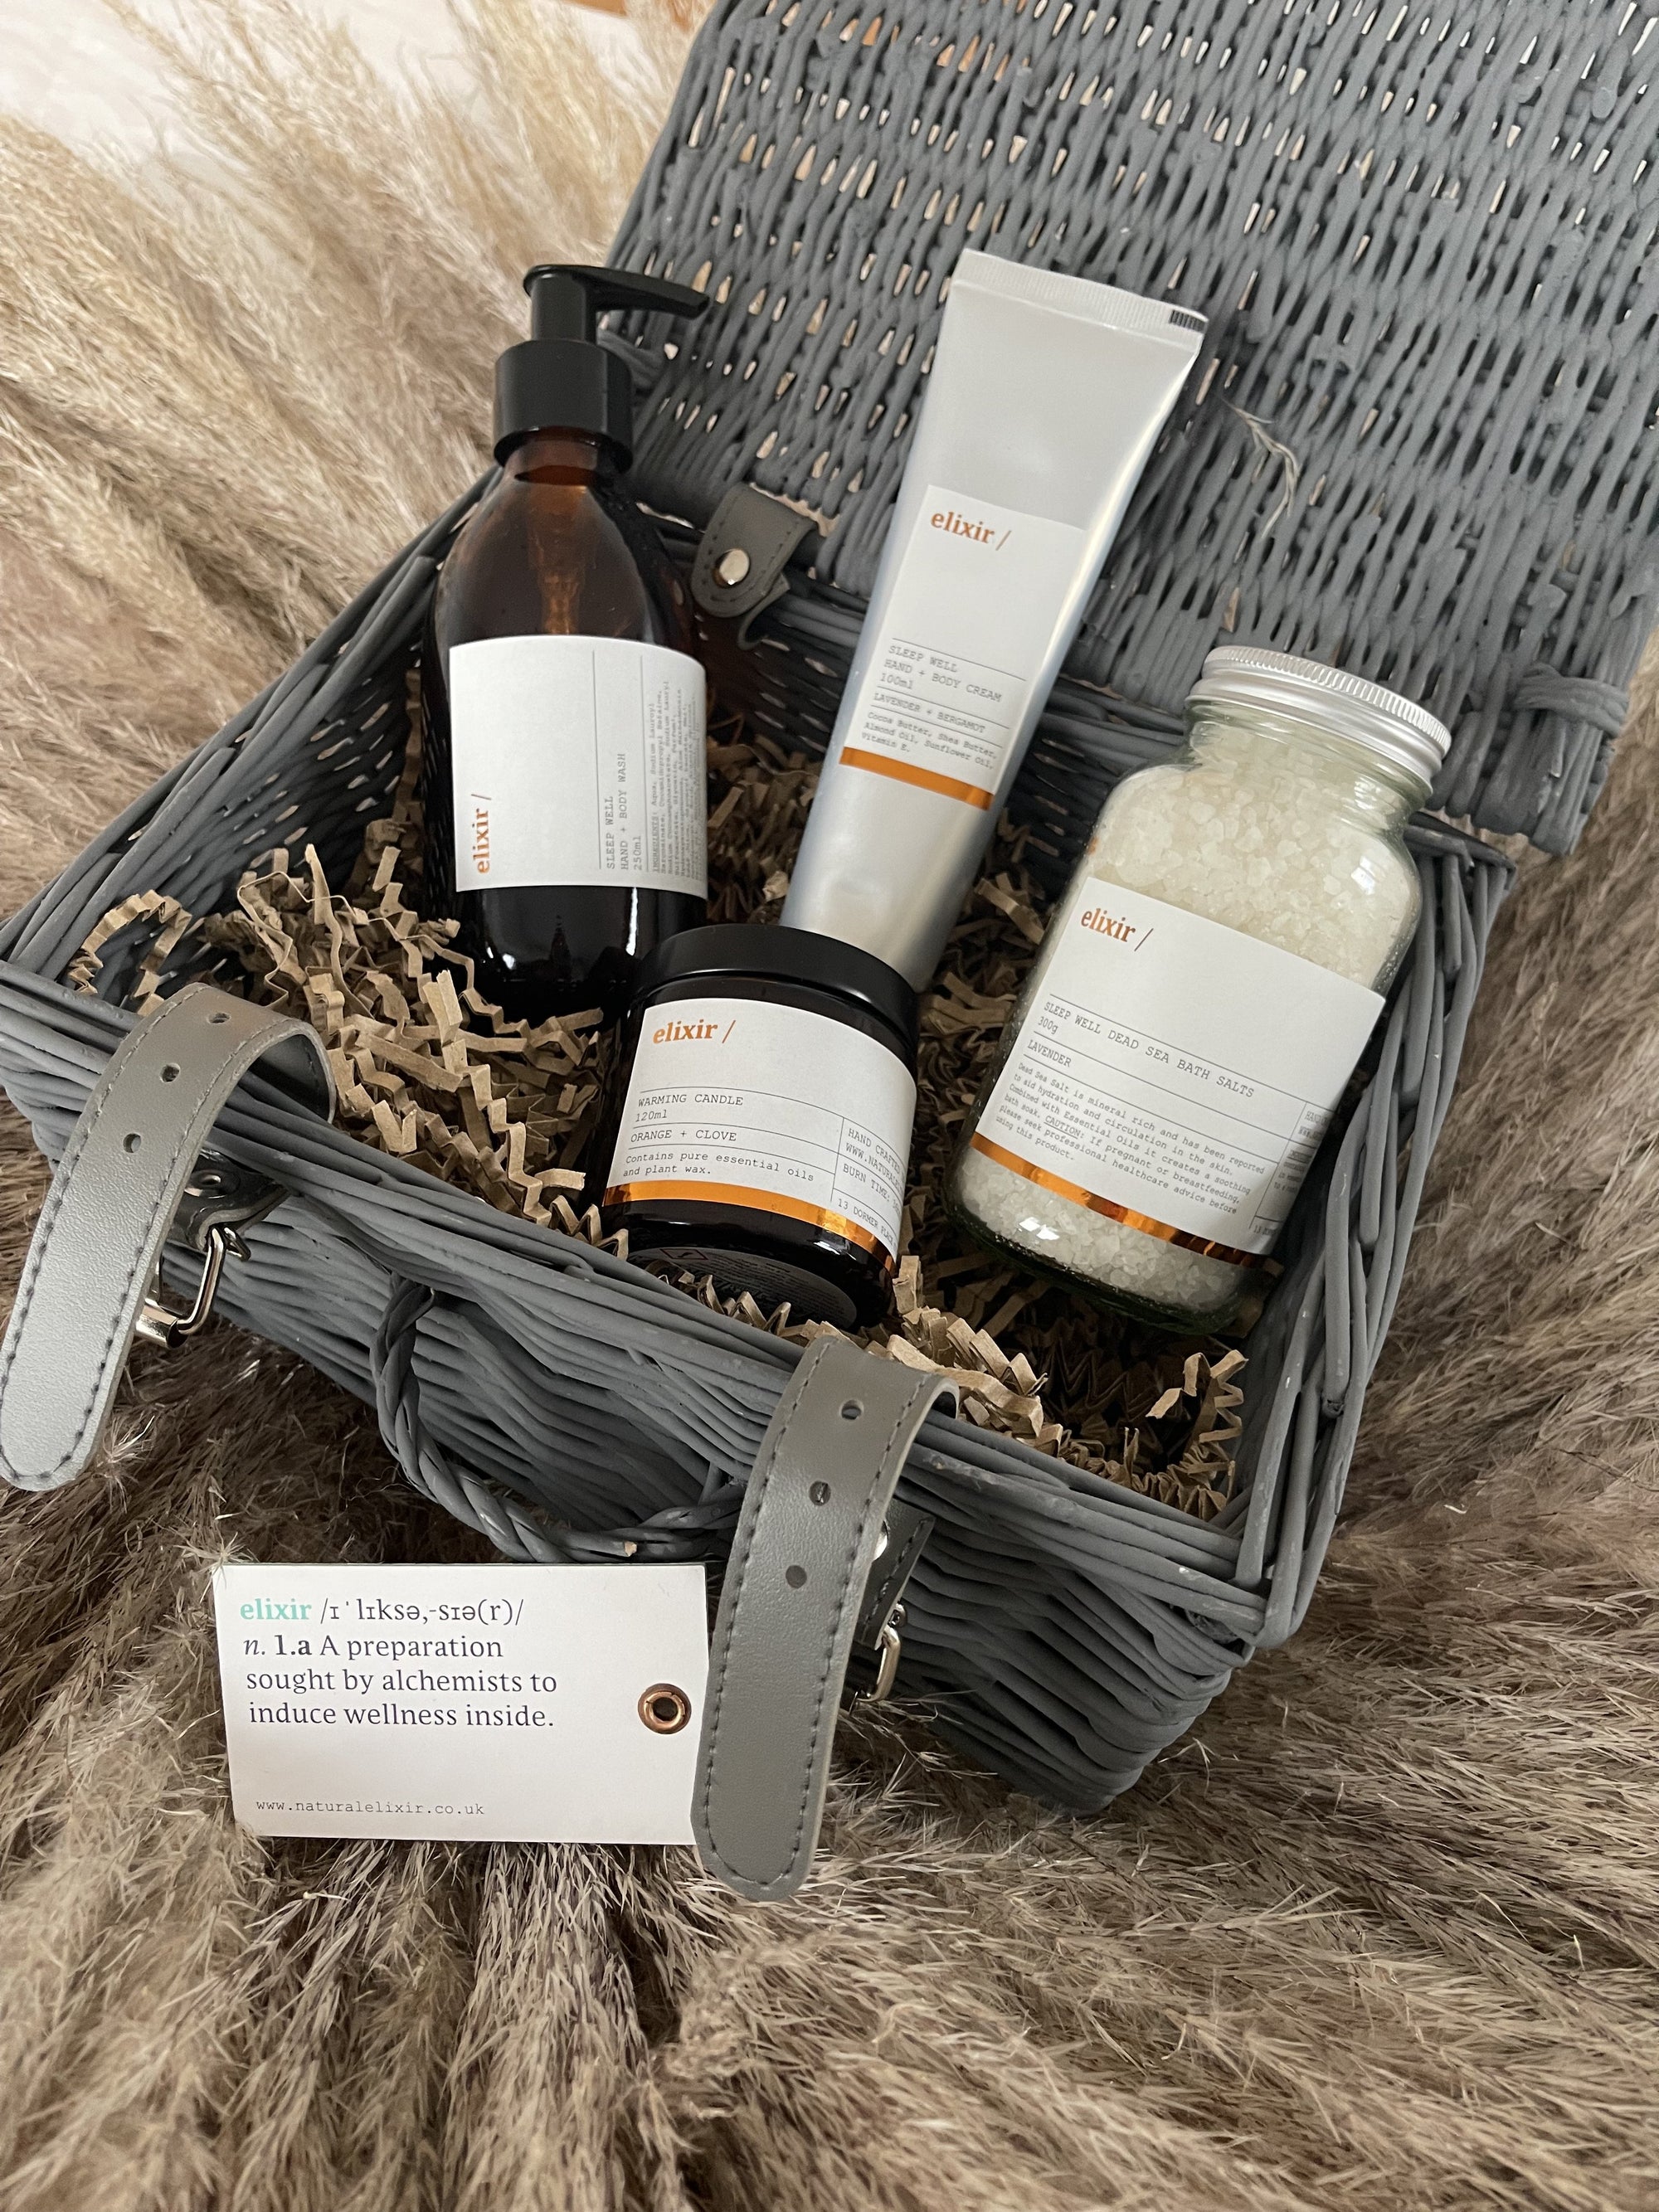 elixir relaxing gift hamper - with elixir products